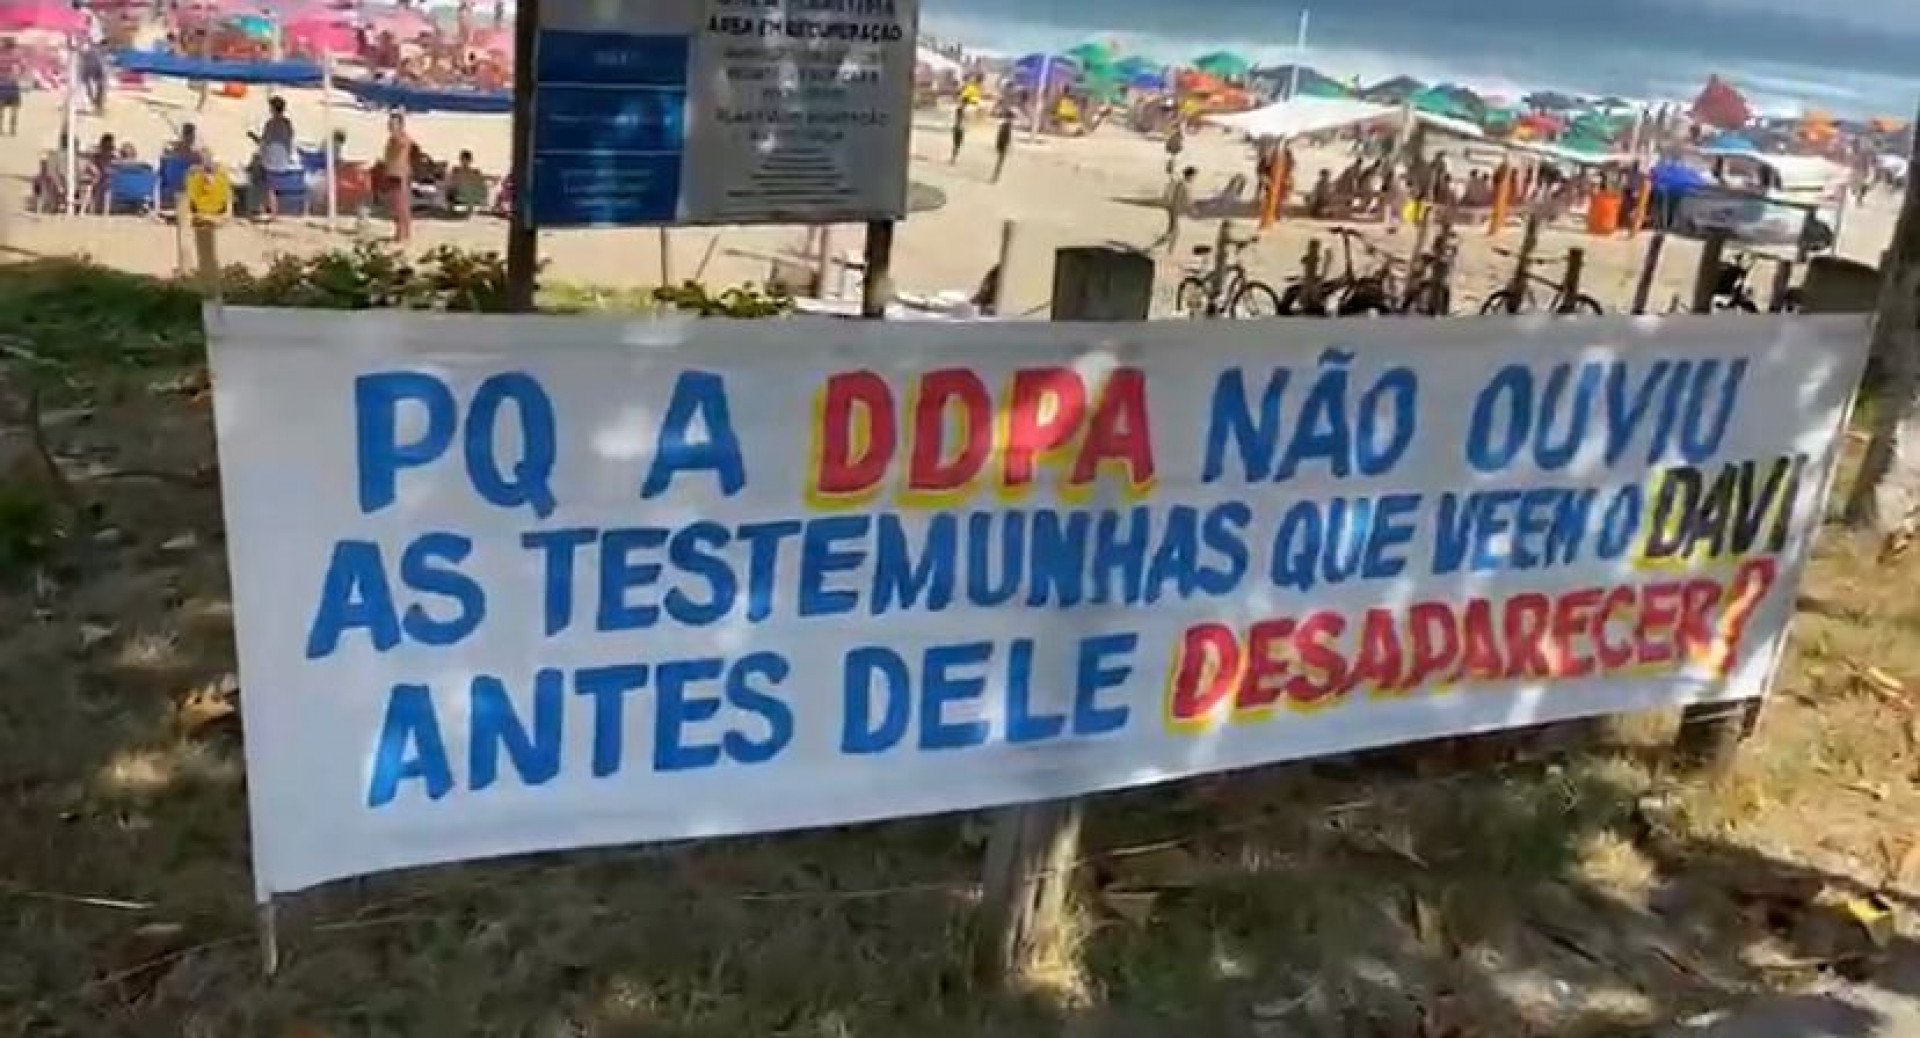  - Cleber Mendes/Arquivo/Agência O DIA